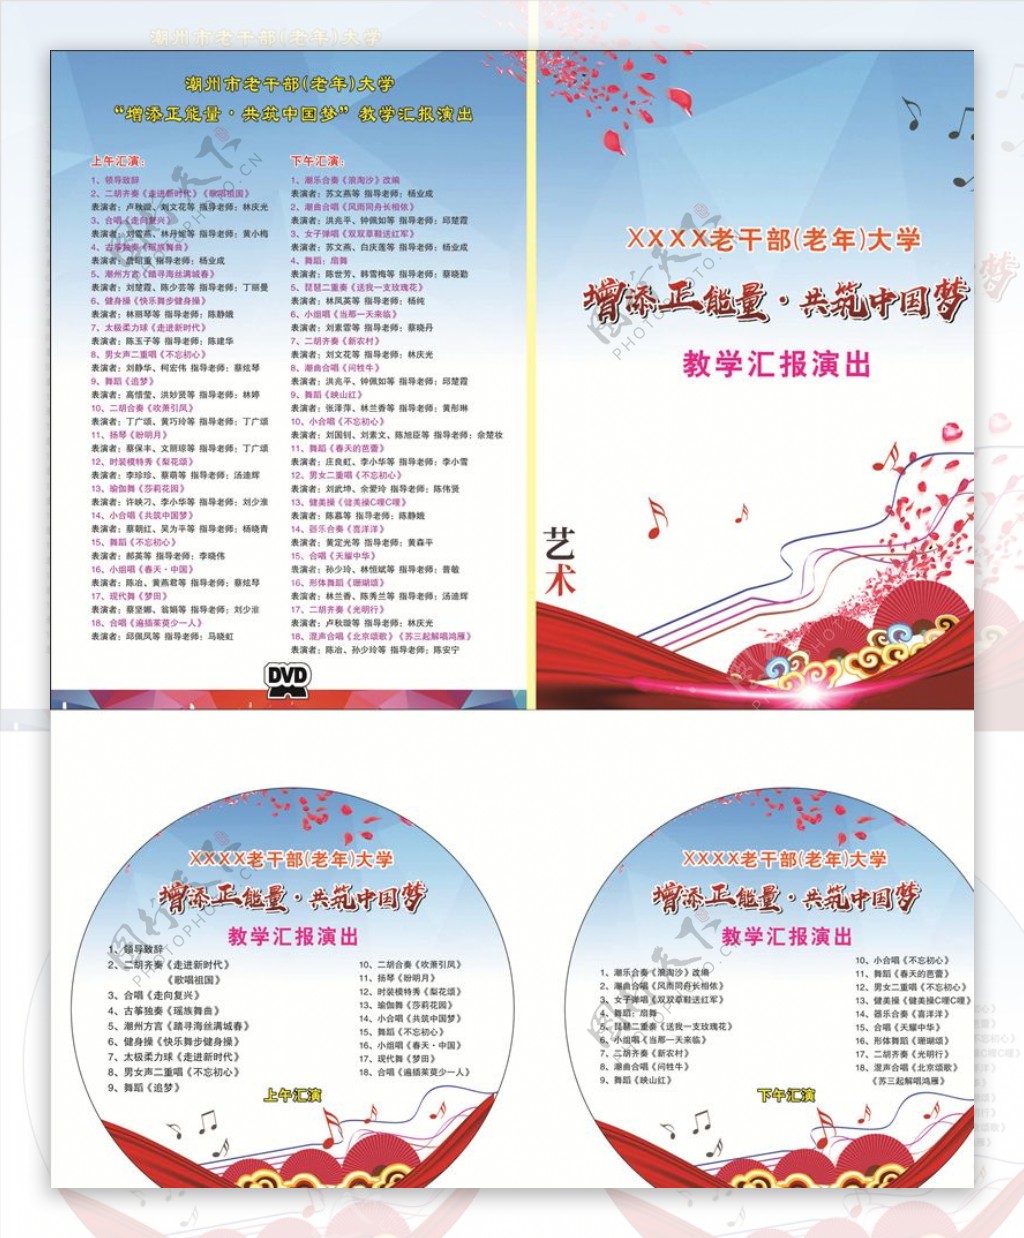 文艺汇演CD封面设计节目表